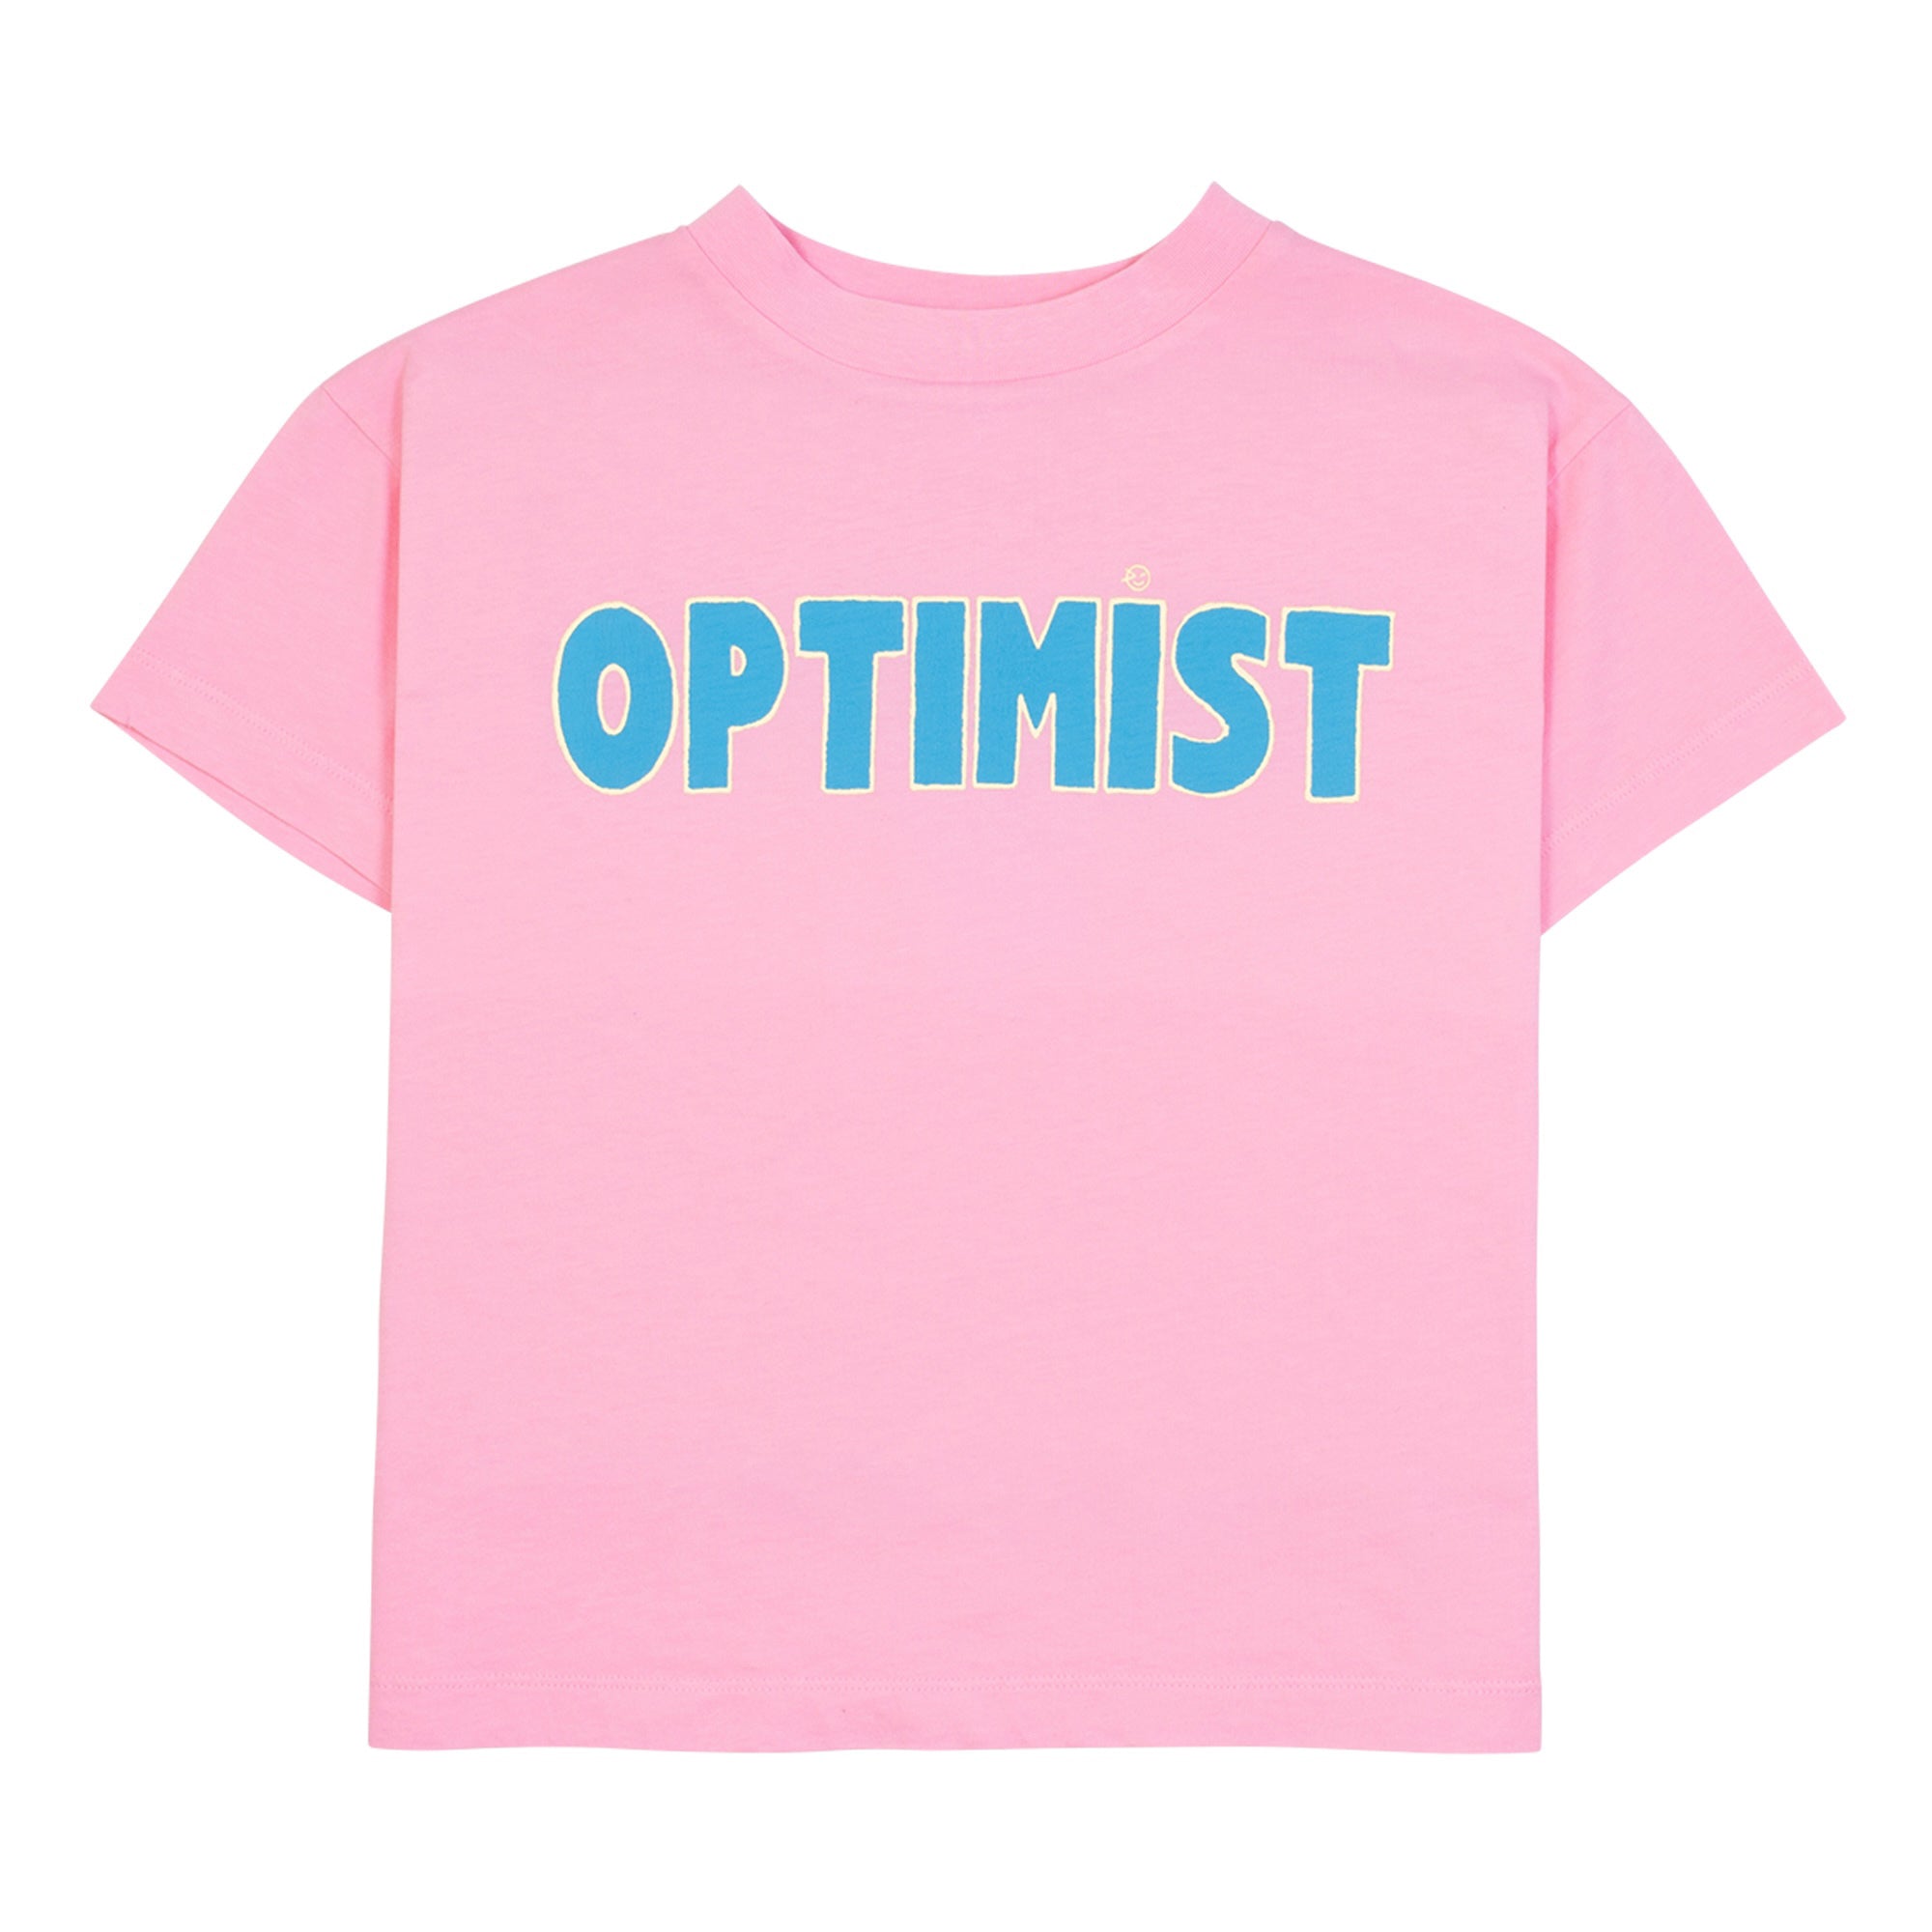 Optimist Tee - Pop Pink